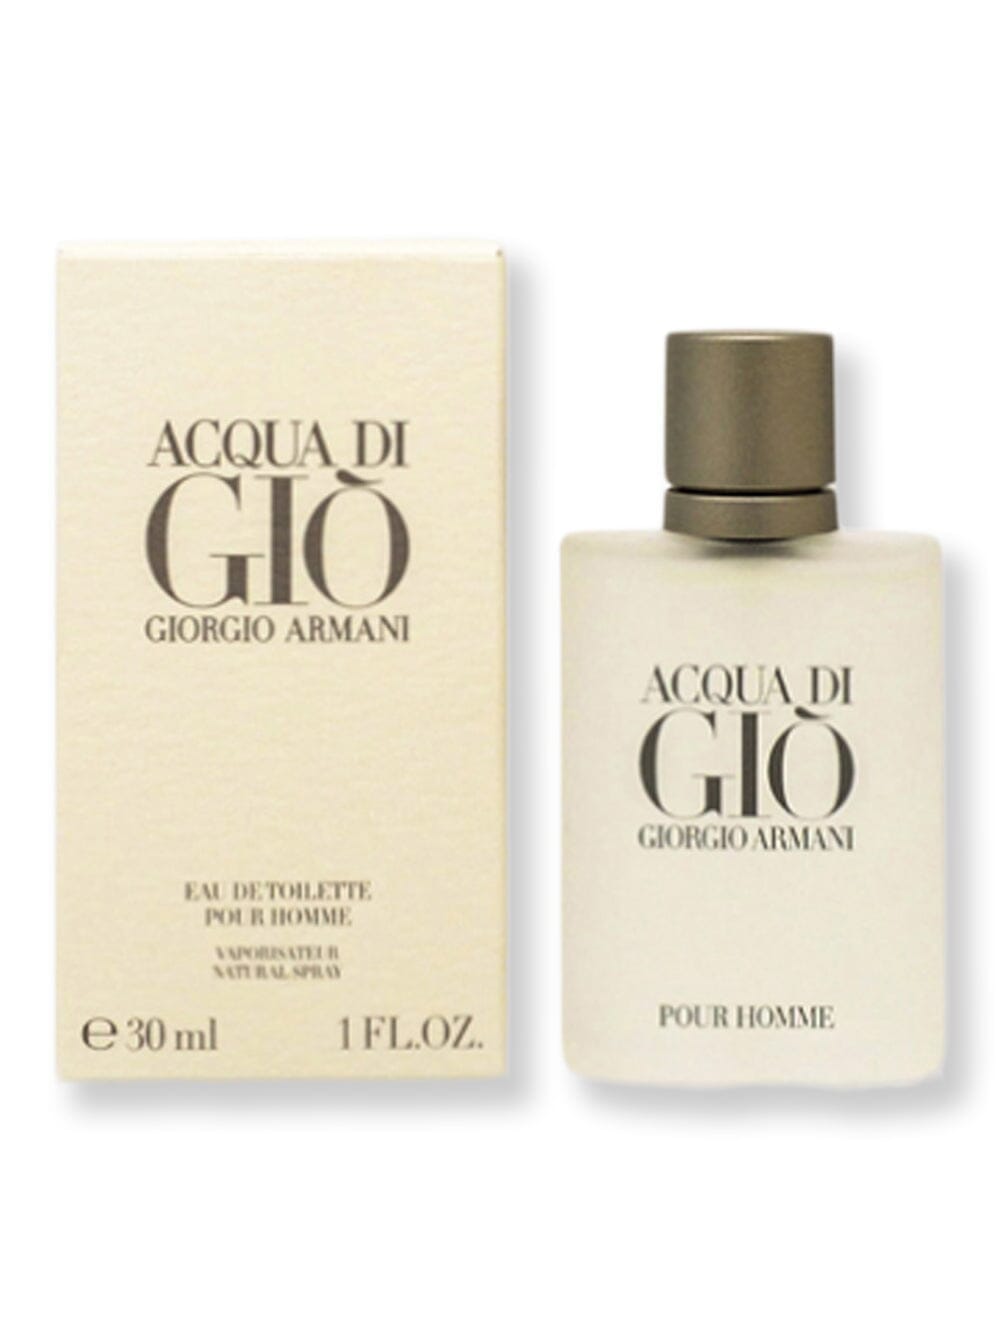 GIORGIO ARMANI GIORGIO ARMANI Acqua Di Gio Men EDT Spray 1 oz Perfume 